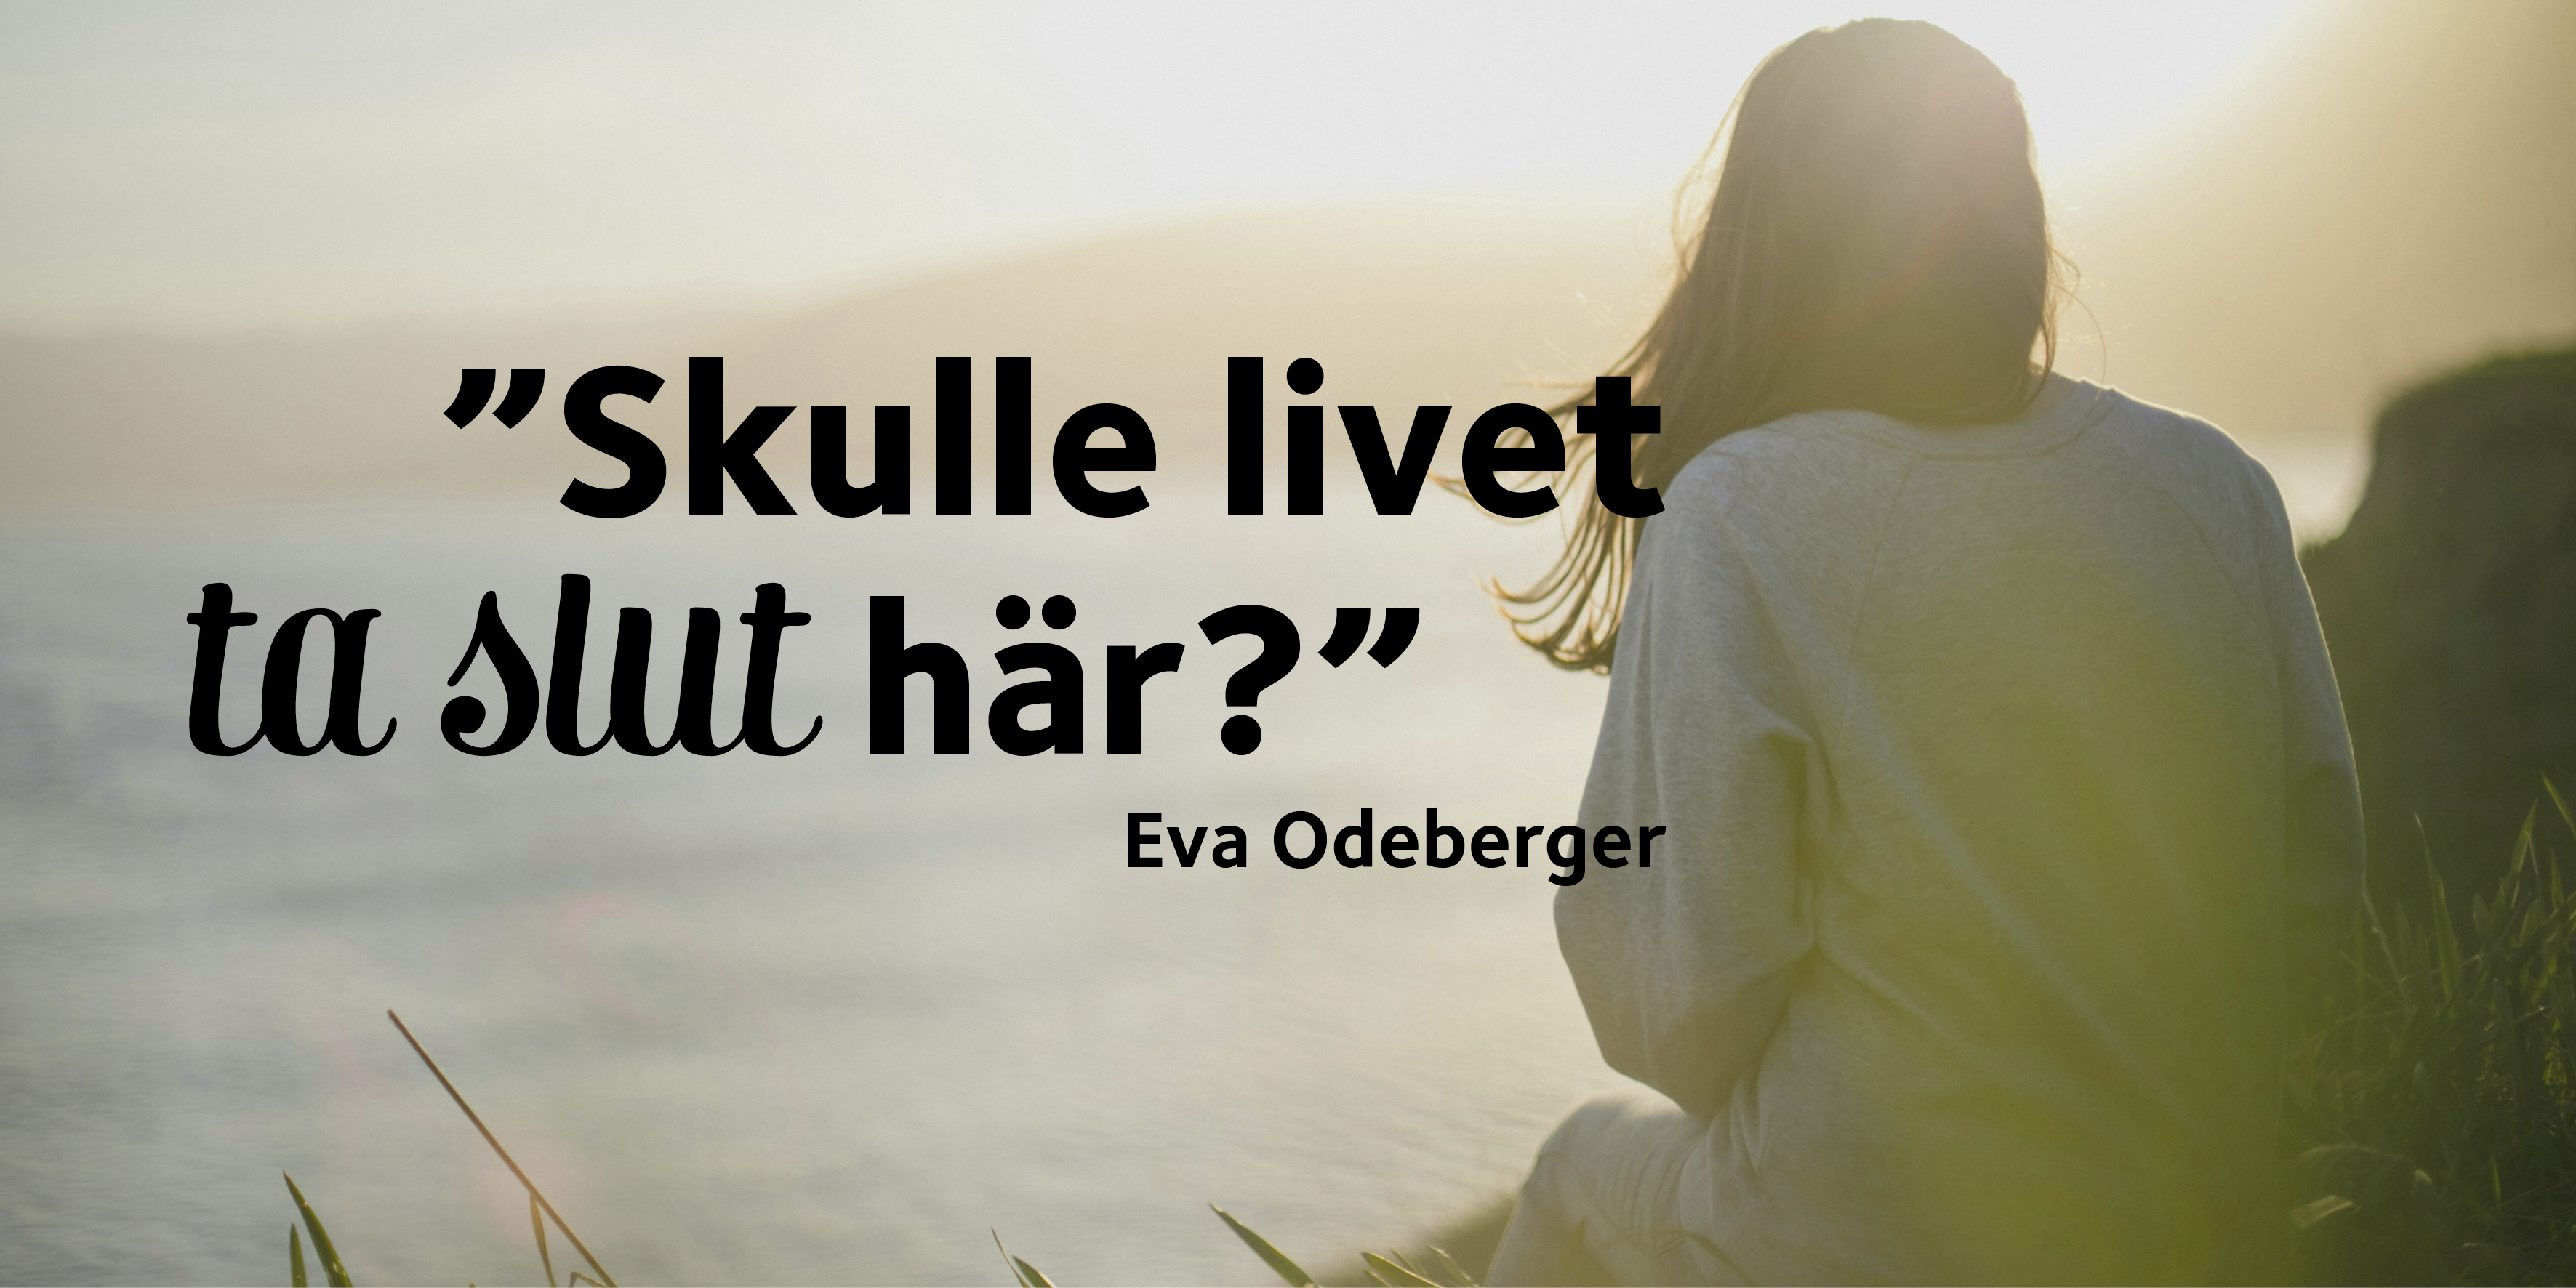 Kvinna som sitter på klippa och tittar ut över horisonten. Text: Eva Odeberger: Skulle livet ta slut här?